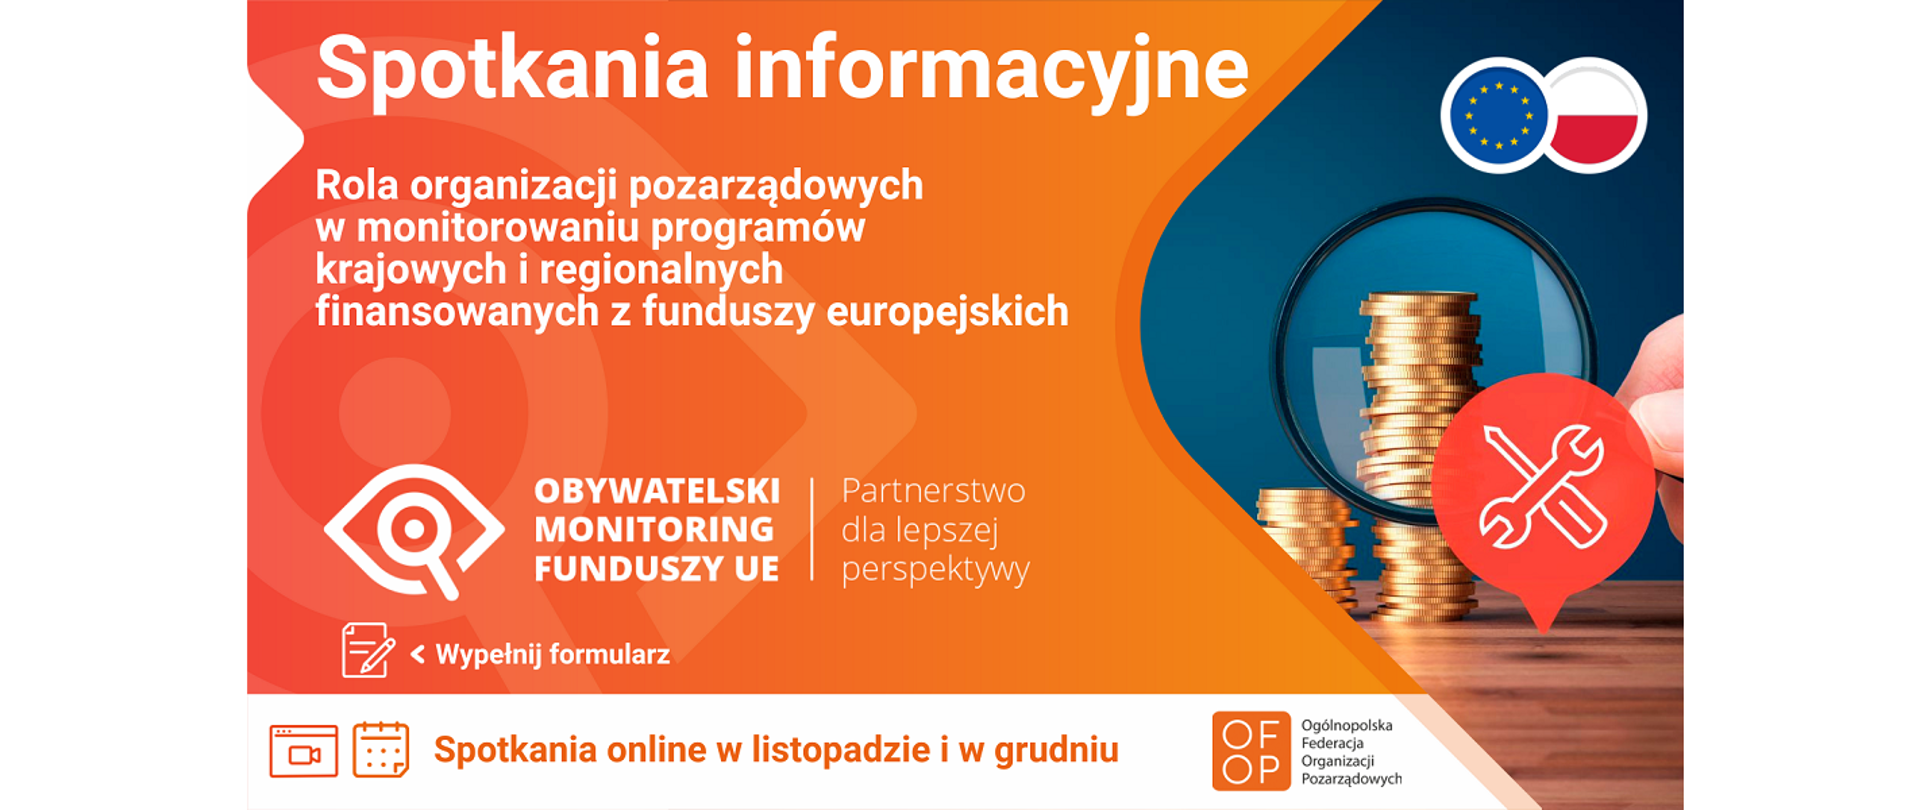 Plakat: Obywatelski monitoring funduszy europejskich - spotkania informacyjne. Rola organizacji pozarządowych w monitorowaniu programów krajowych i regionalnych finansowanych z funduszy europejskich